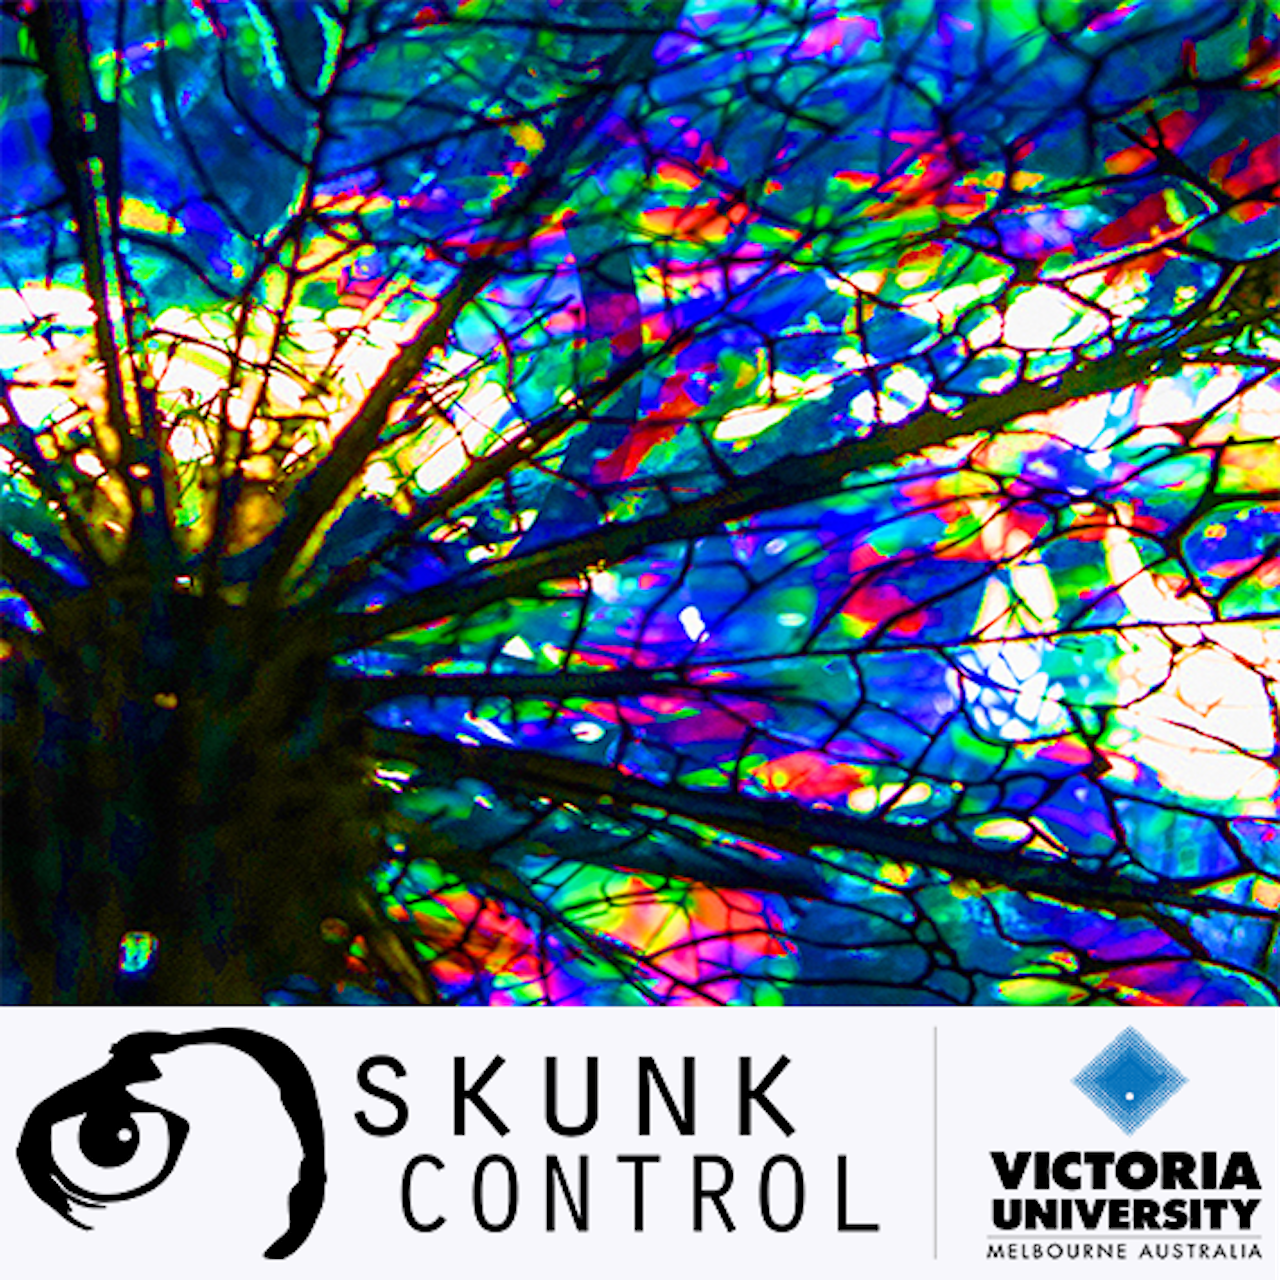 Skunk Control - I HAVE ALWAYS BEEN HERE